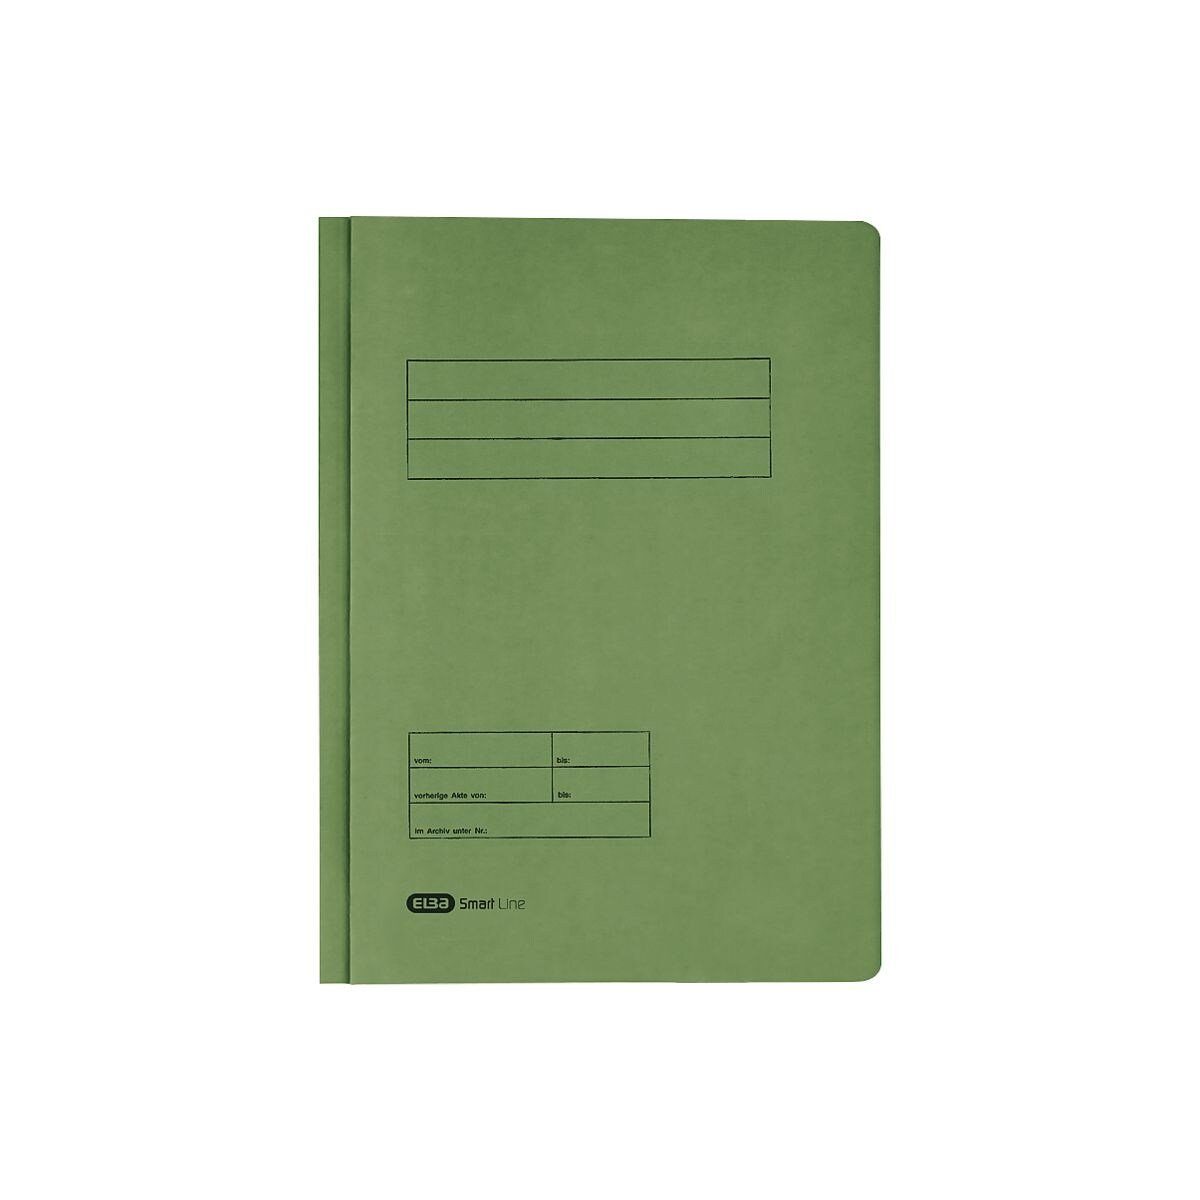 ELBA Hefter 10042122, Doppelhefter, Format DIN A4, aus Karton grün